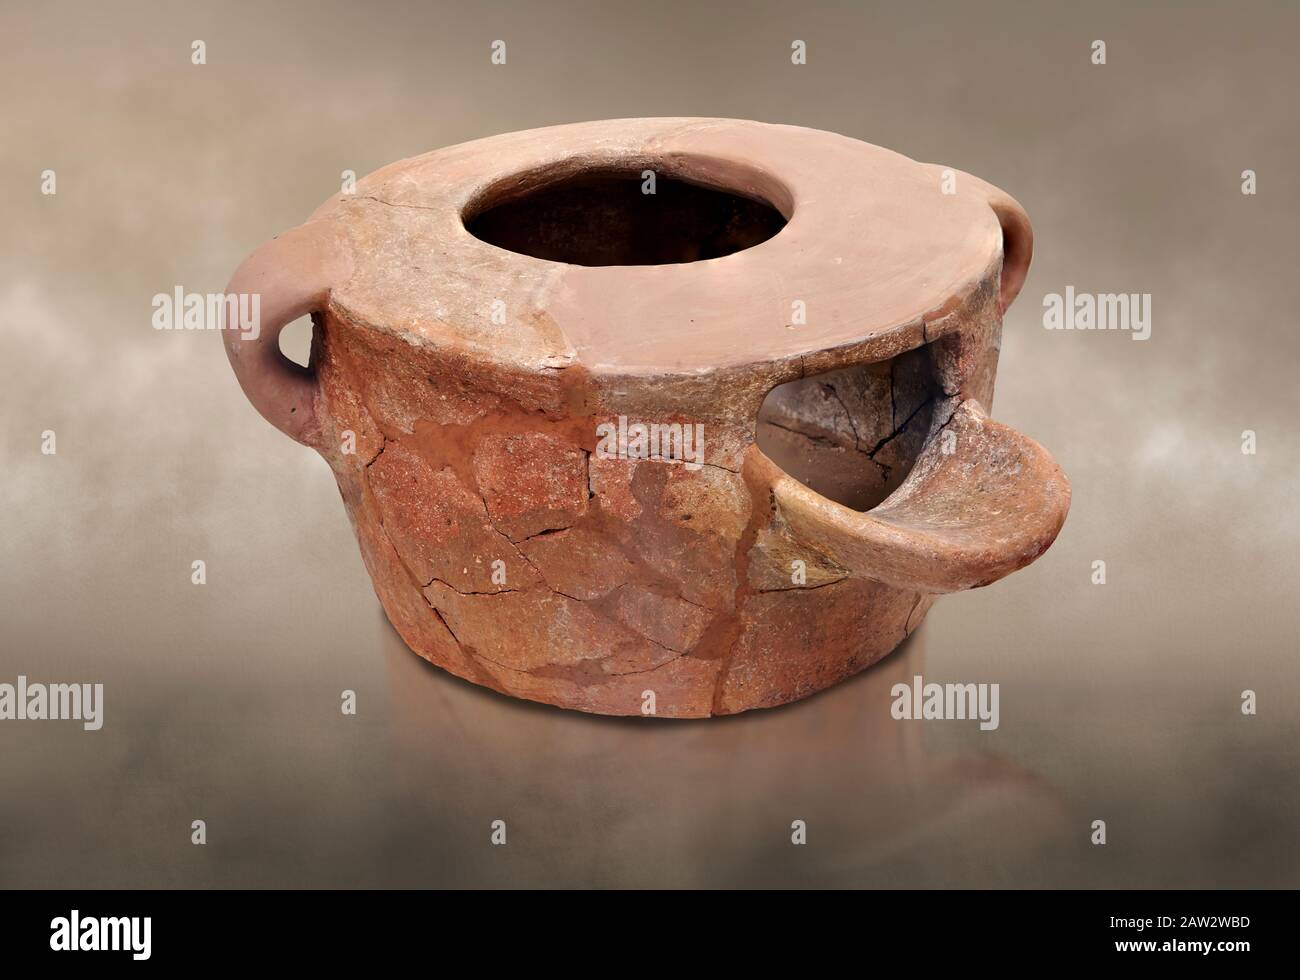 Neolithischer, kretinischer, tragbarer Tonofen, offener Brennofen, der auf Knossos, 4500-3000 v. Chr., Archäologisches Museum Heraklion abgefeuert wurde. Stockfoto